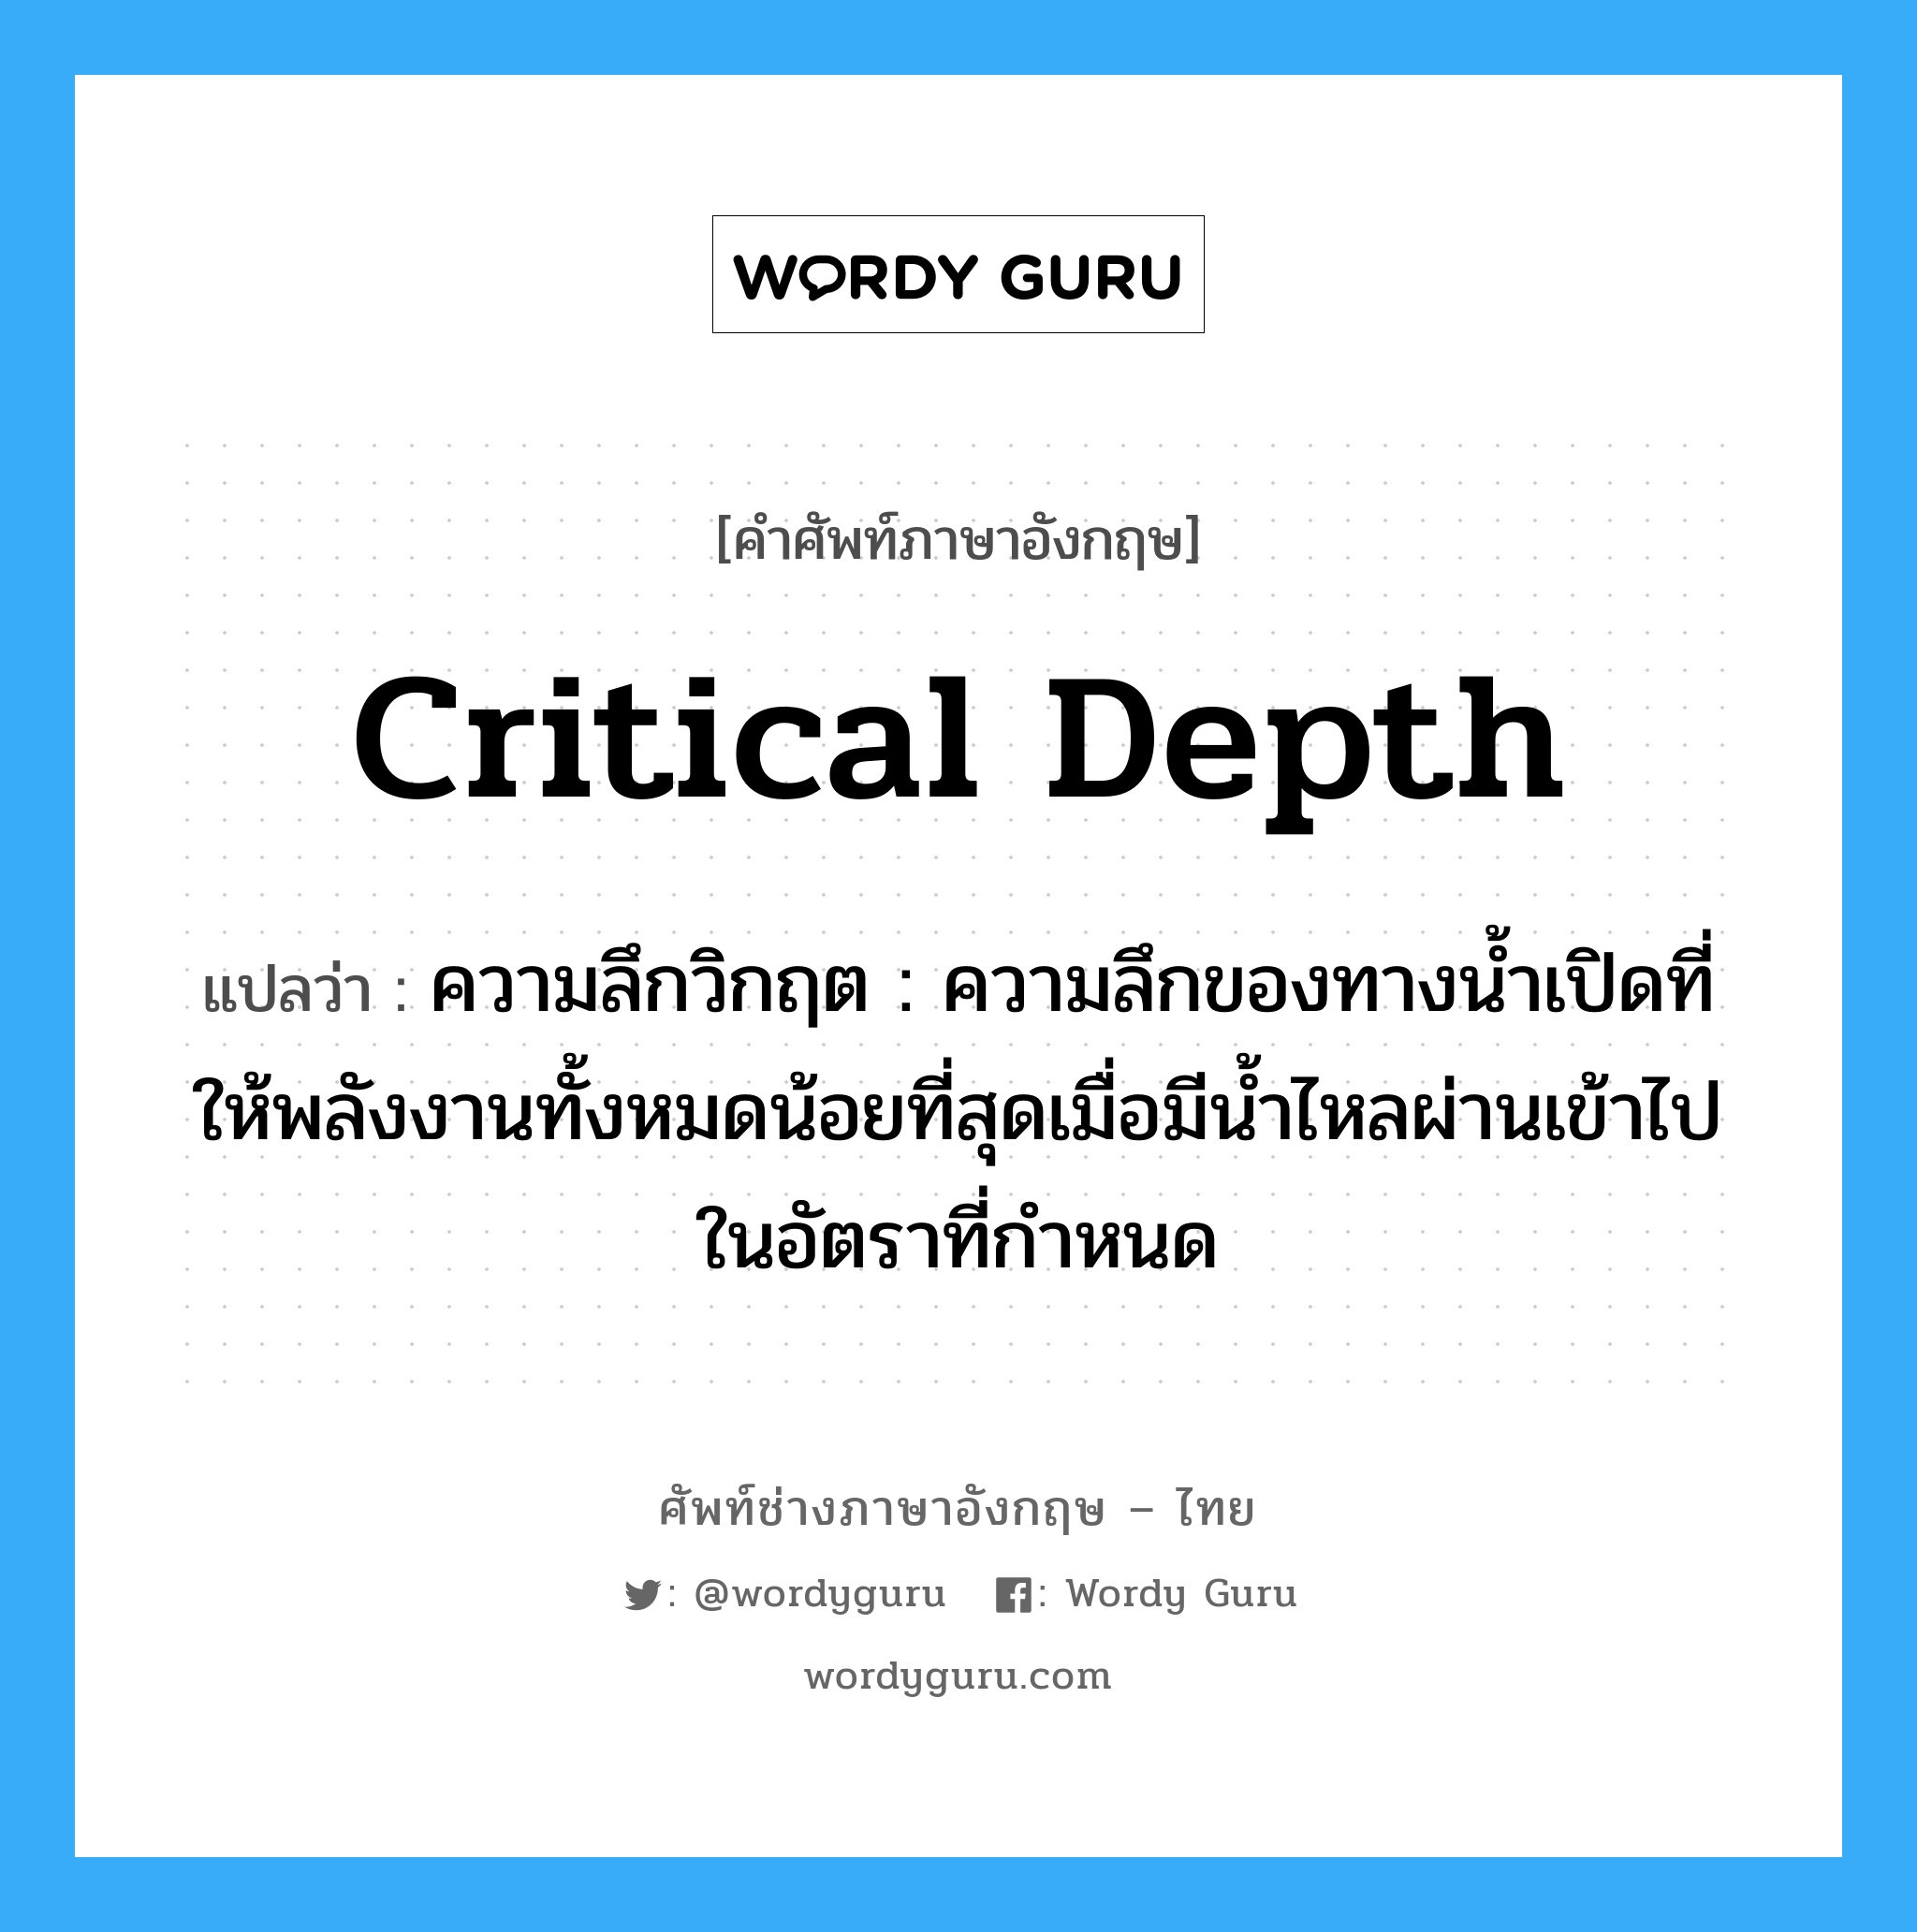 critical depth แปลว่า?, คำศัพท์ช่างภาษาอังกฤษ - ไทย critical depth คำศัพท์ภาษาอังกฤษ critical depth แปลว่า ความลึกวิกฤต : ความลึกของทางน้ำเปิดที่ให้พลังงานทั้งหมดน้อยที่สุดเมื่อมีน้ำไหลผ่านเข้าไปในอัตราที่กำหนด